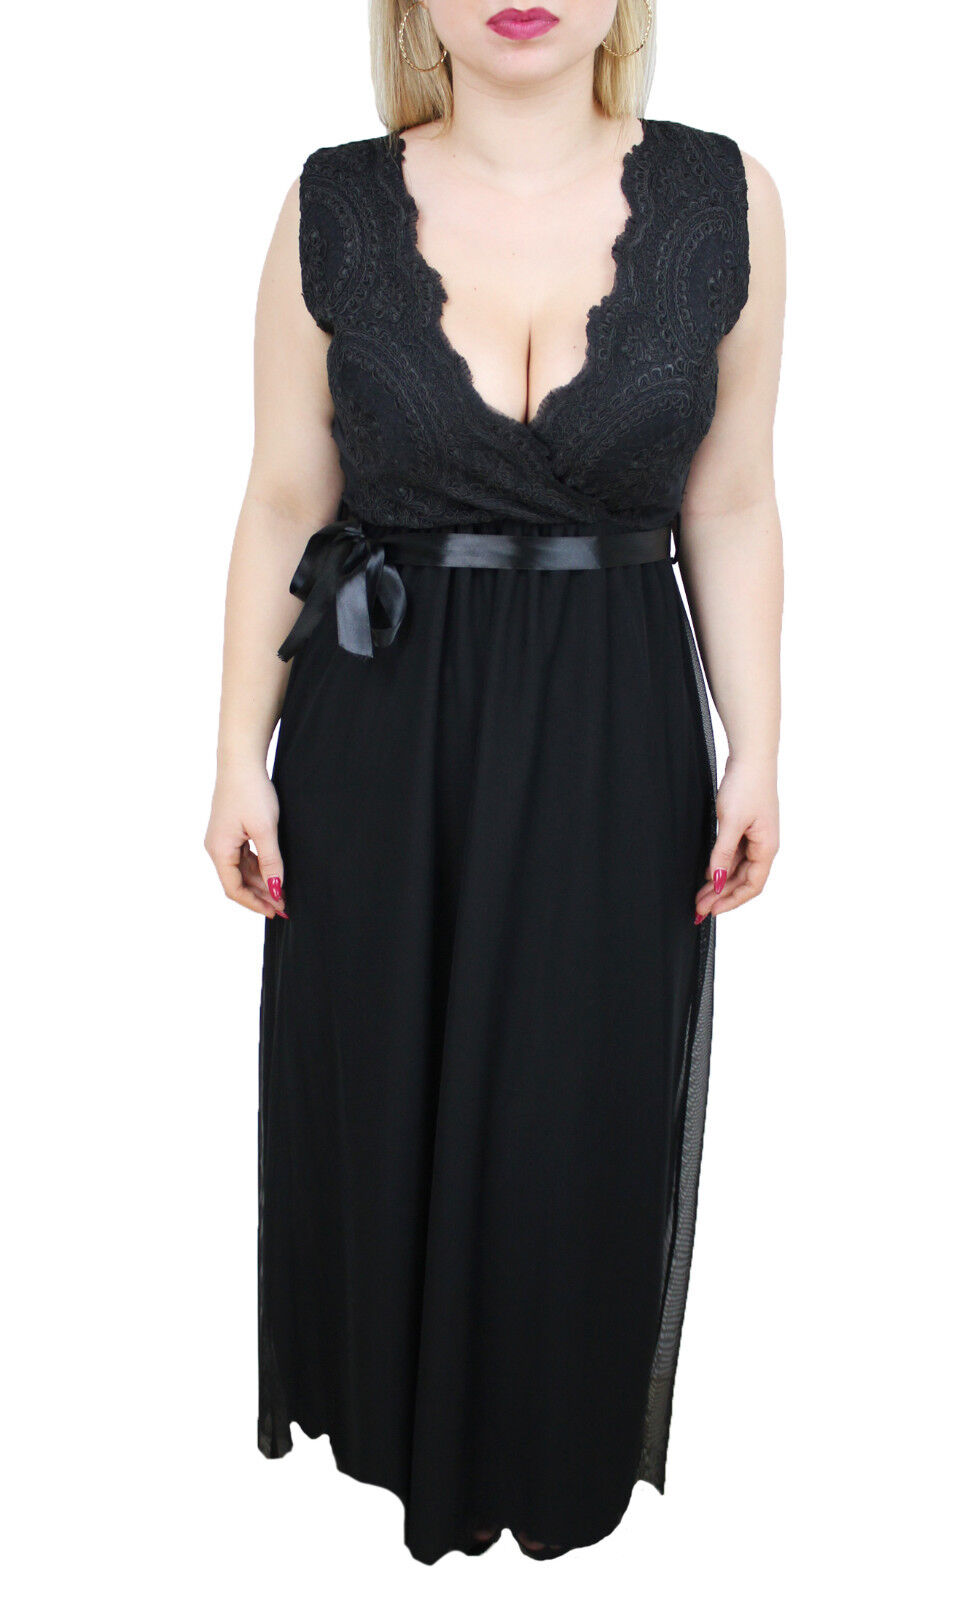 6050 - Abito donna nero lungo 100% made in Italy vestito pizzo elegante merletti